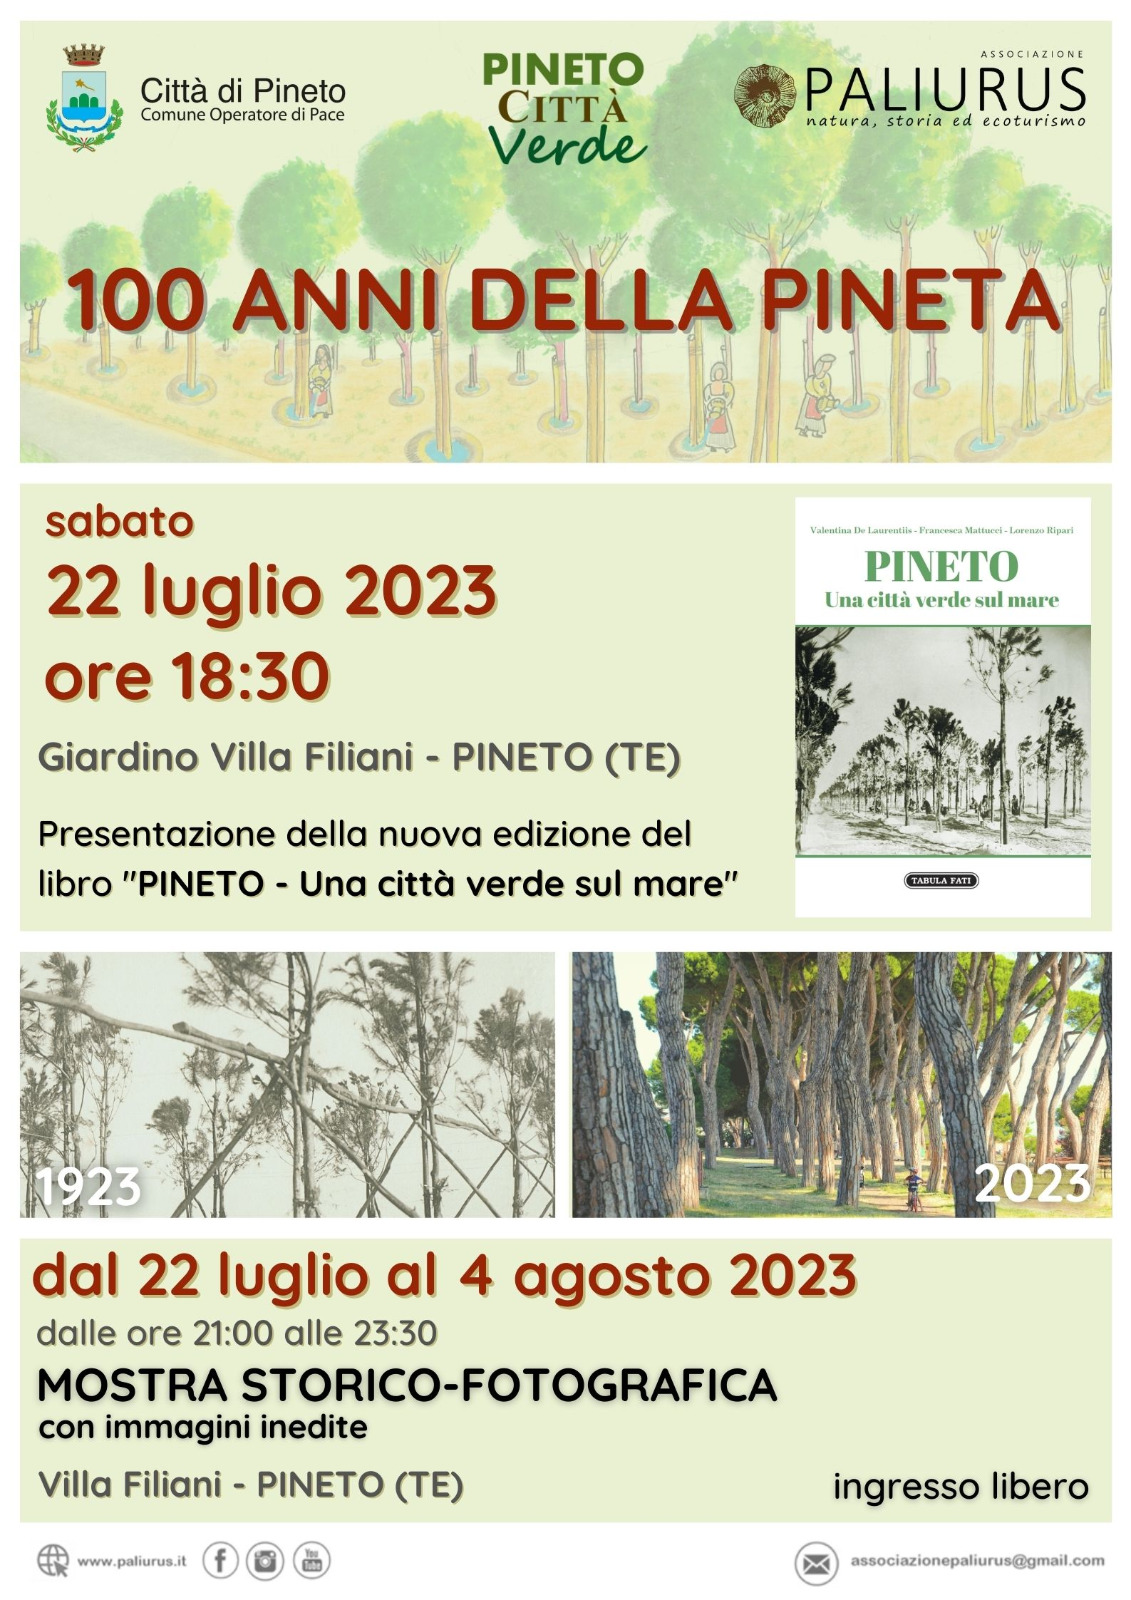 Pineto celebra i cento anni della pineta con la pubblicazione della nuova edizione del libro